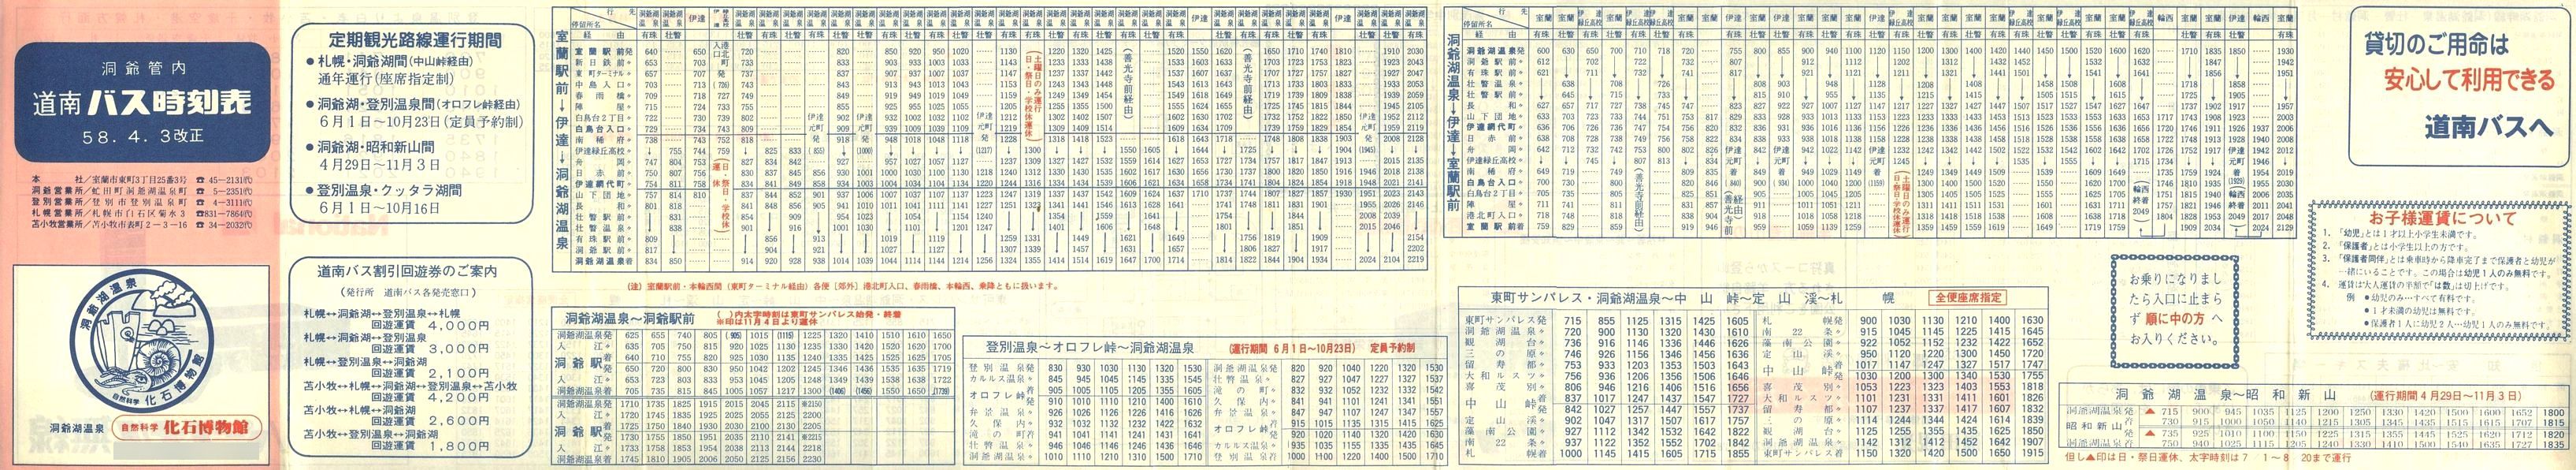 1983-04-03改正_道南バス_洞爺管内時刻表表面